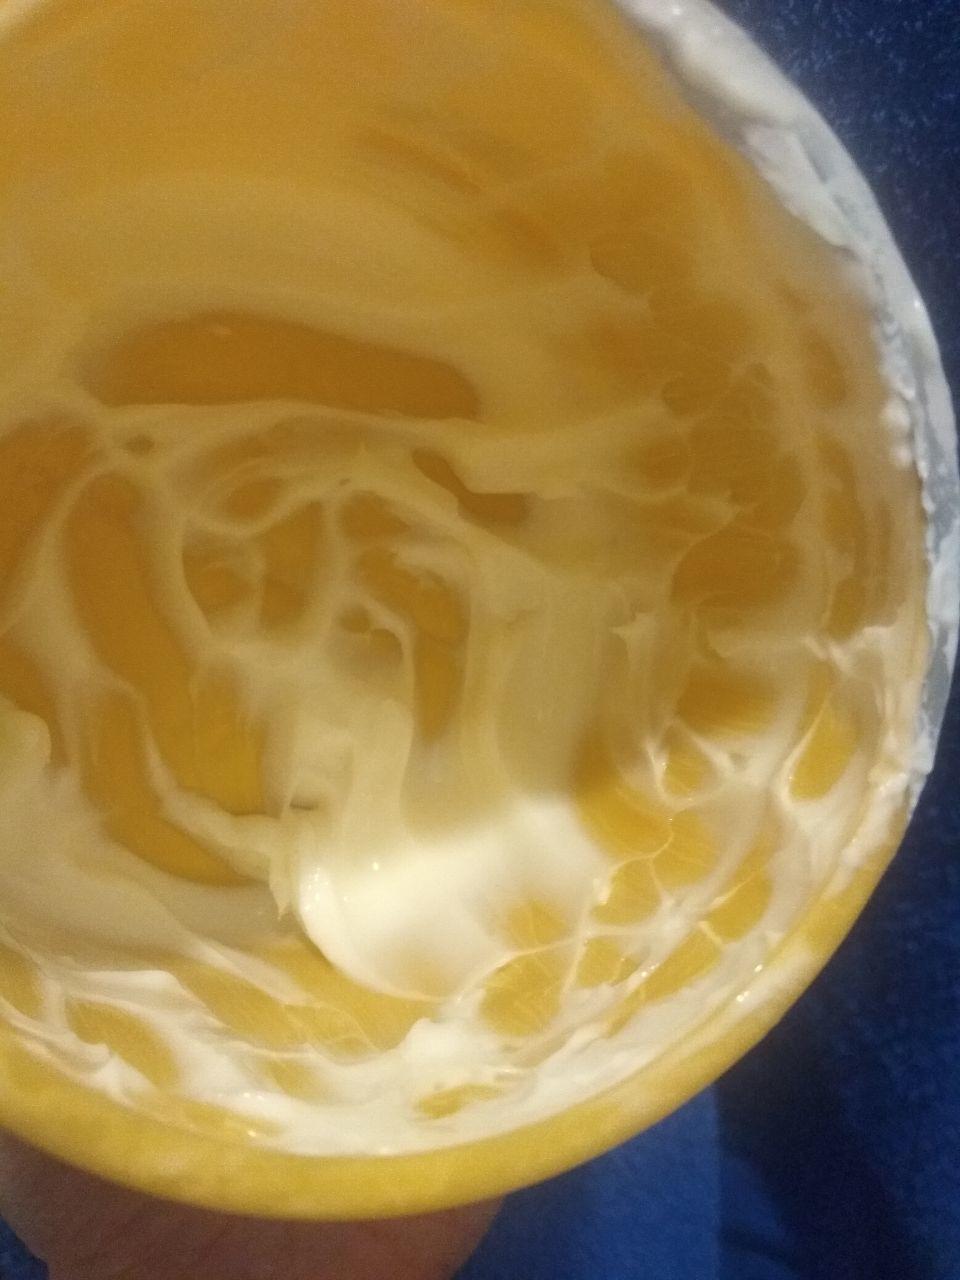 Отзыв на товар: Крем-butter для тела с ценнейшими маслами Суперпитание Аргана и миндаль. Белита - Витэкс. Вид 2 от 15.11.2022 